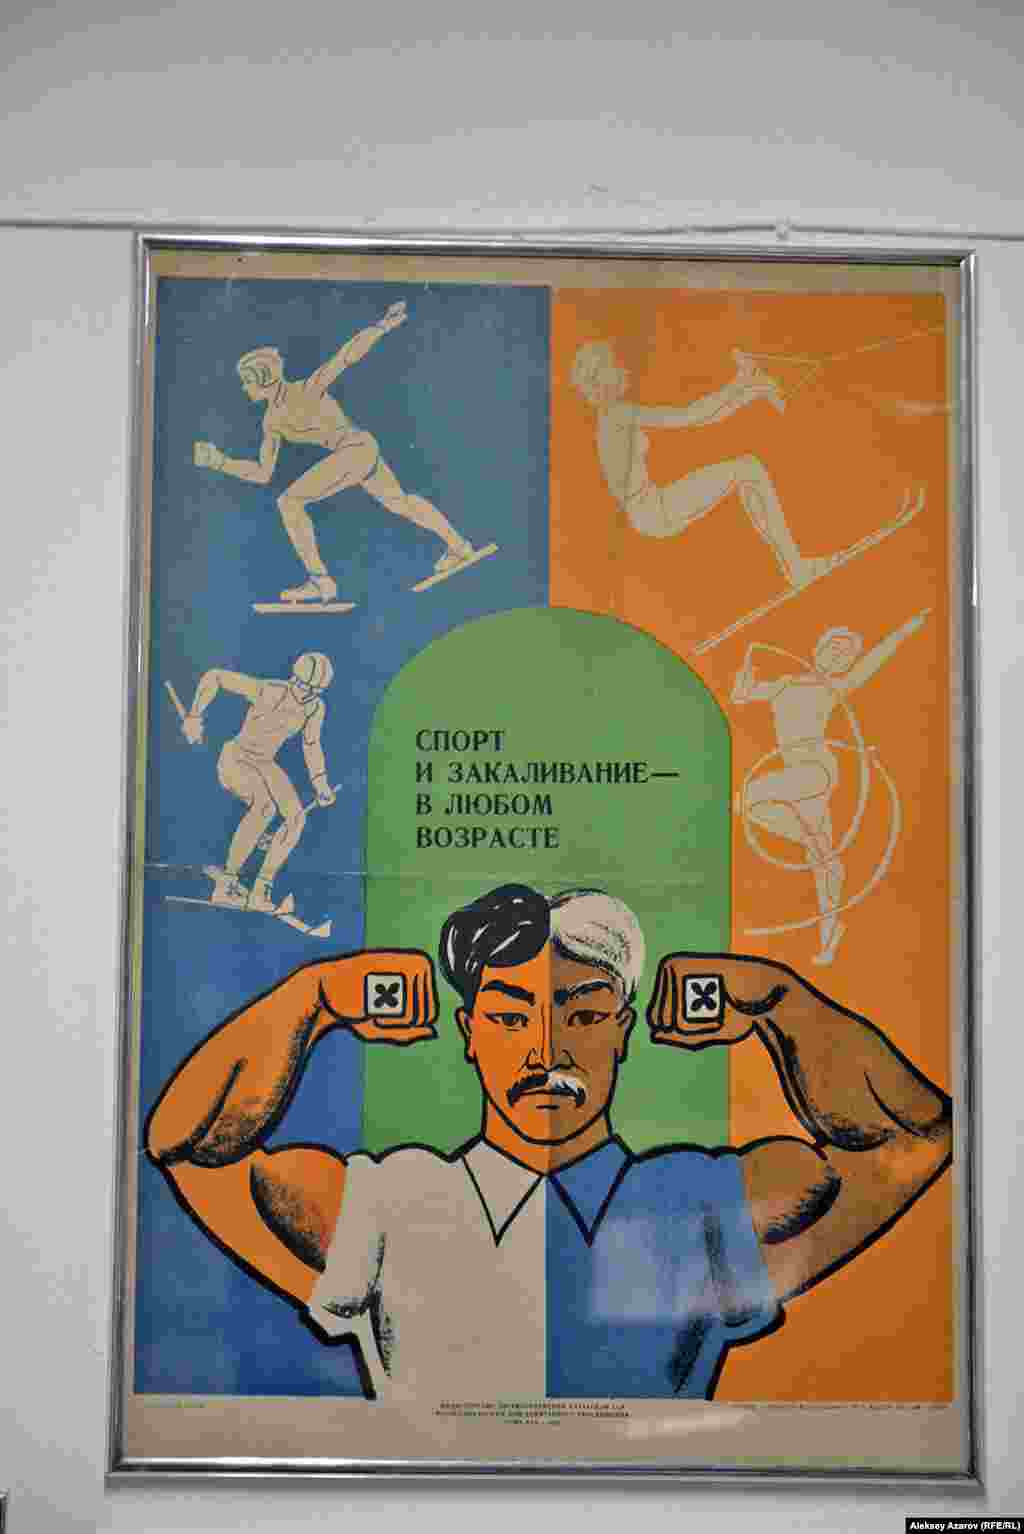 Это чуть ли не единственный казахстанский плакат на выставке.&nbsp;Как видно, он содержит призыв к здоровому образу жизни. Его выпустил в 1978 году Республиканский дом санитарного просвещения. Плакат создал художник Сергей Сухов.